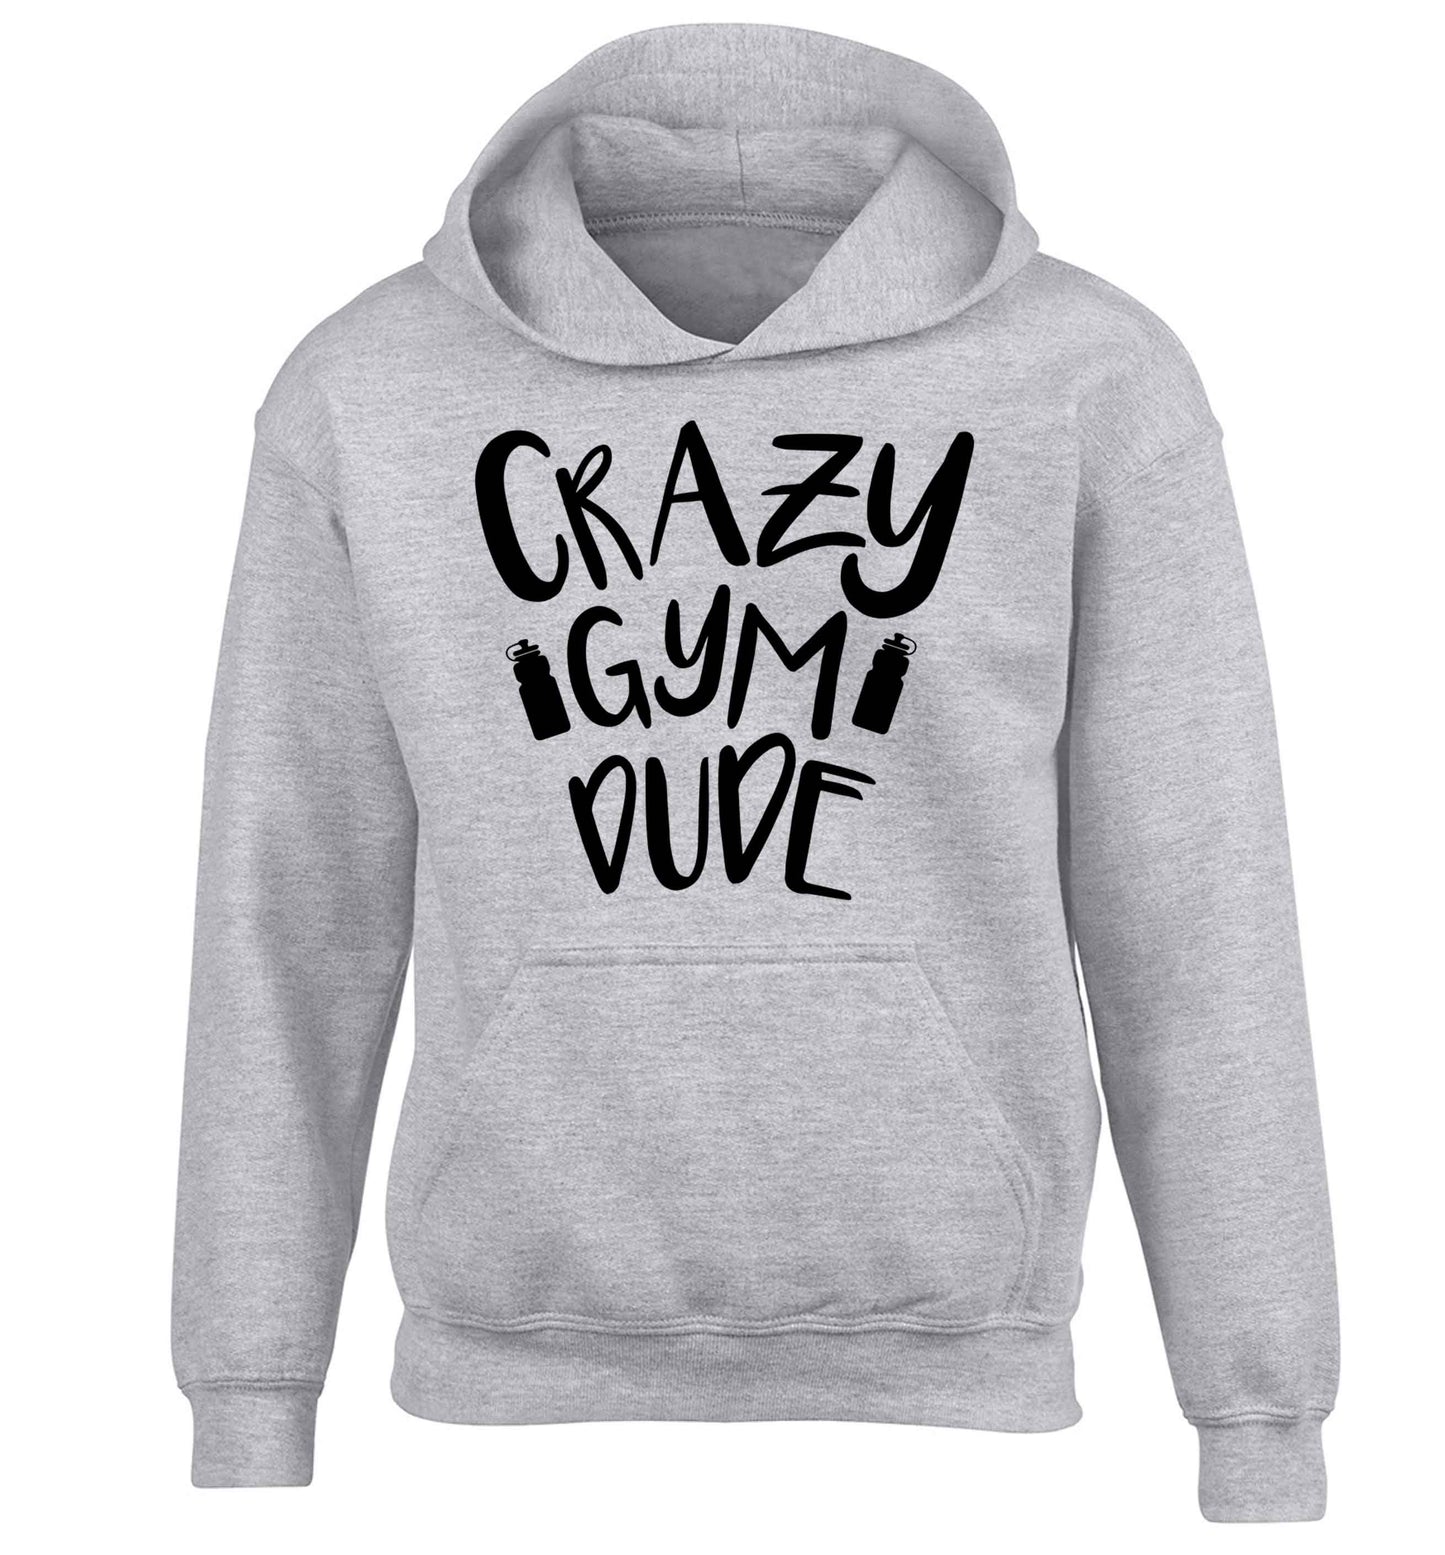 Crazy gym dude children's grey hoodie 12-13 Years